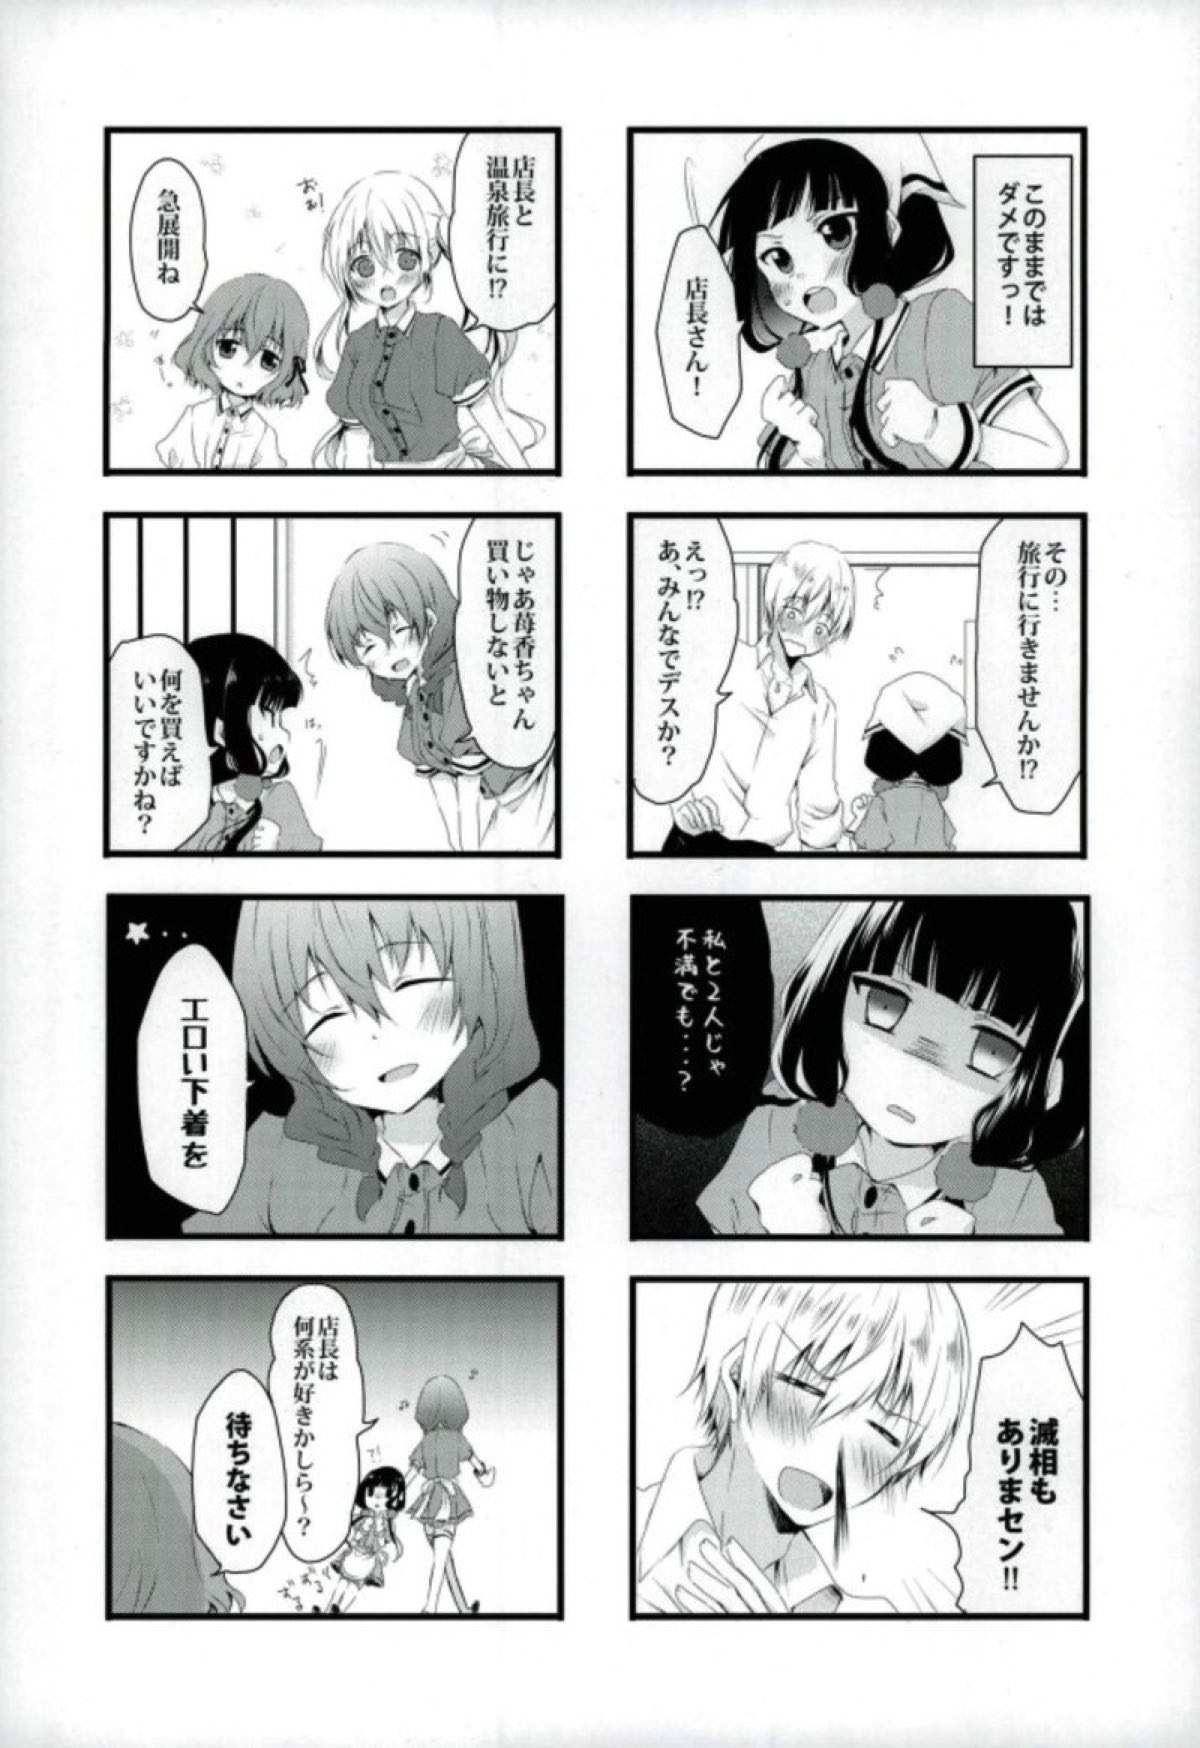 【ブレンド・S】恋する女の子たちの胸キュン不可避な４コマ漫画☆の画像4枚目